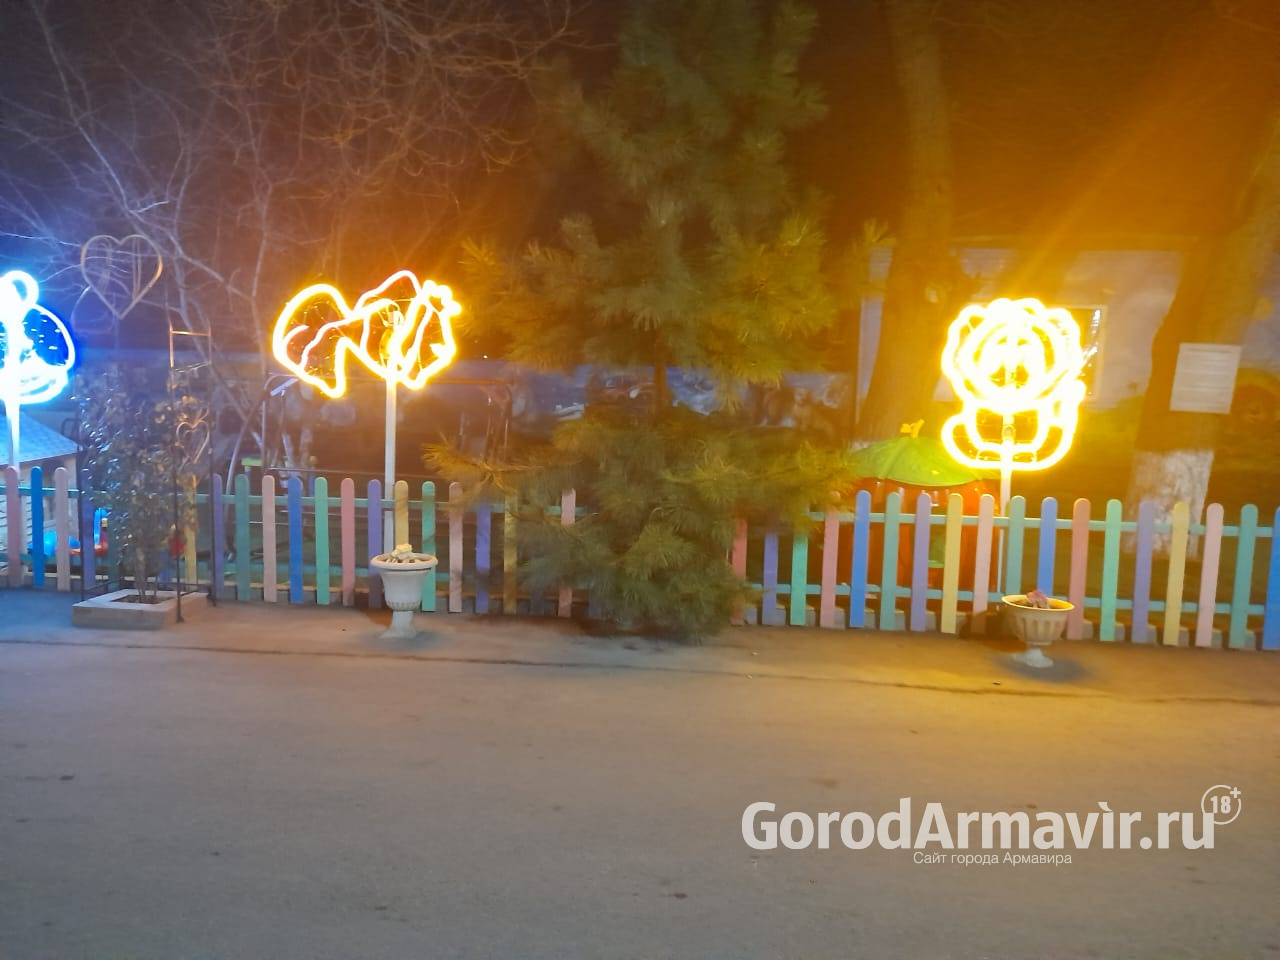 Жители Армавира украсили улицу новогодней иллюминацией